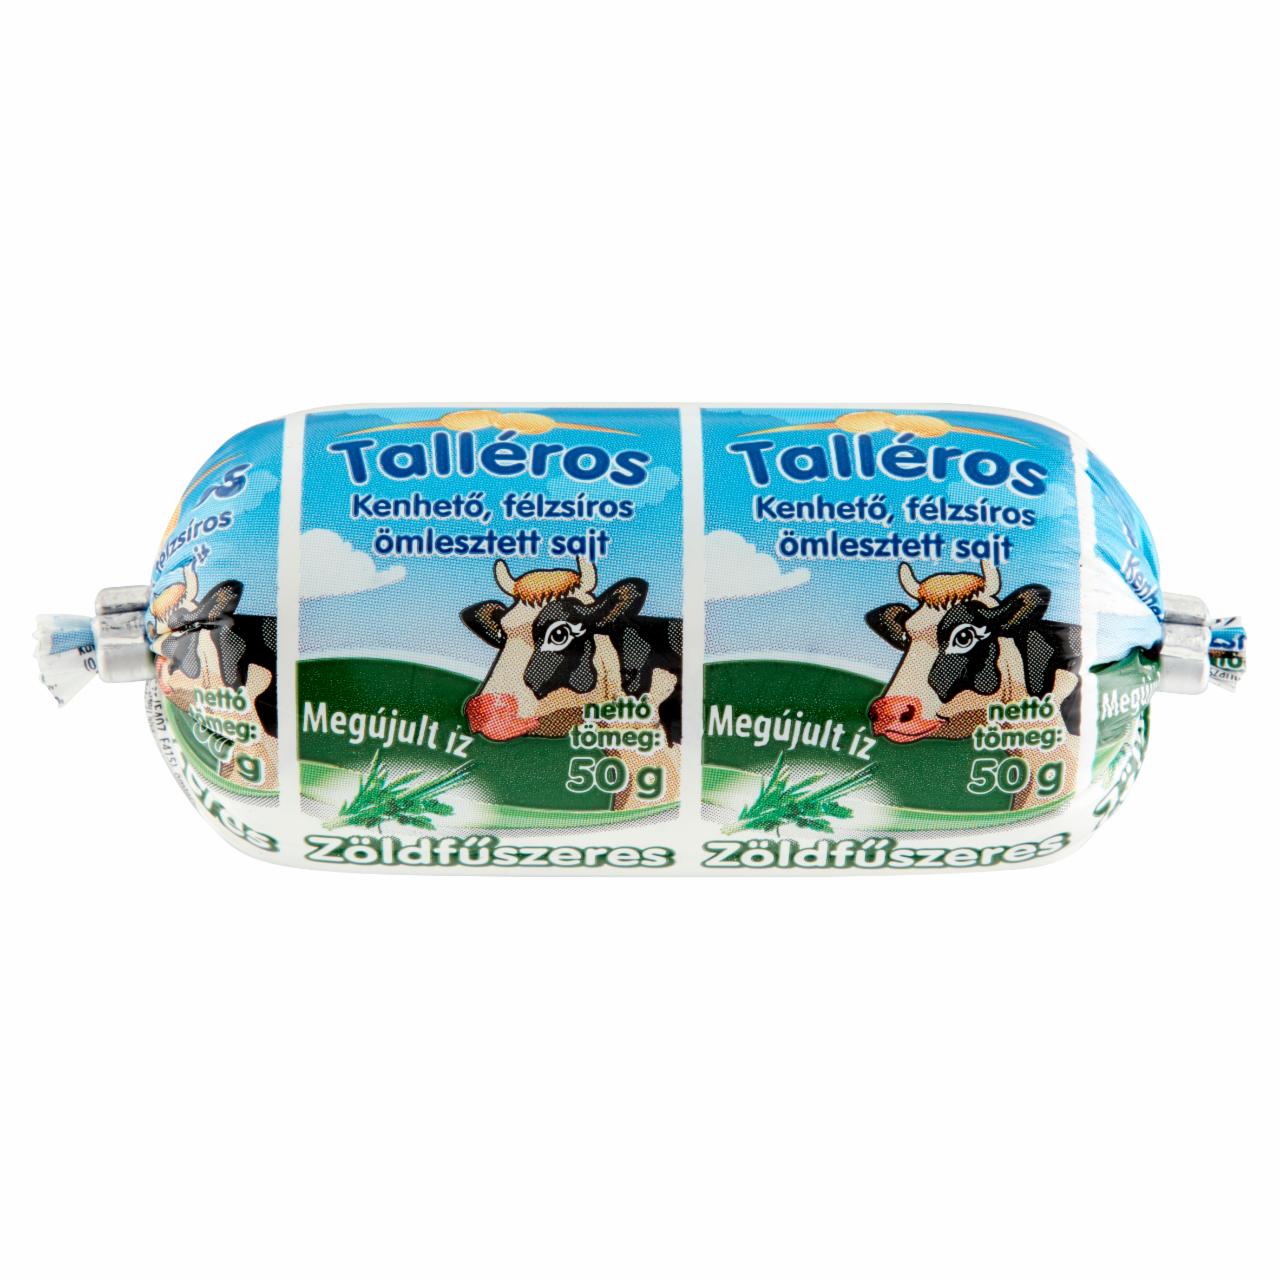 Képek - Talléros zöldfűszeres, kenhető, félzsíros ömlesztett sajt 50 g